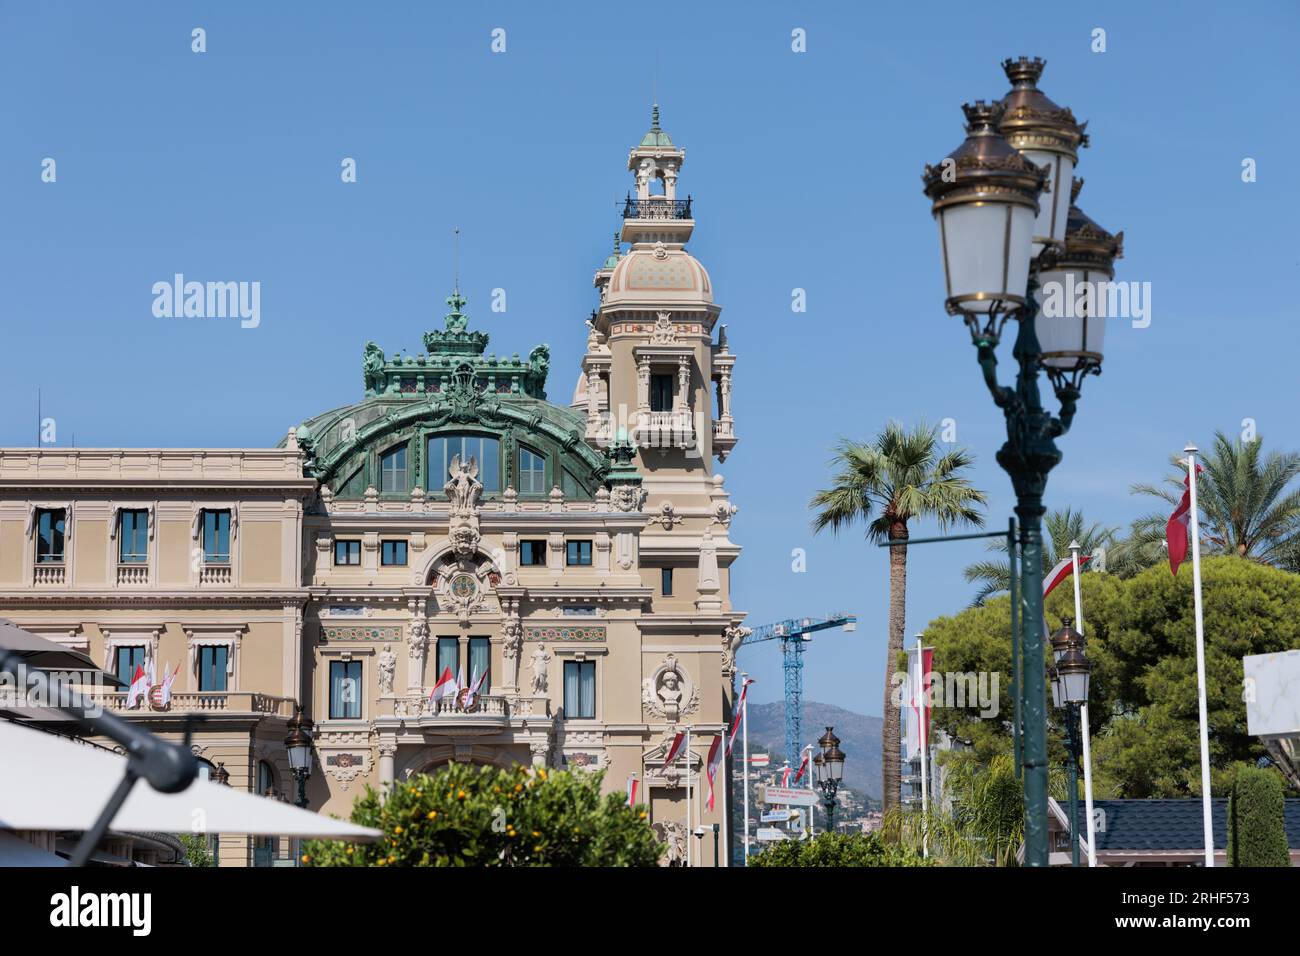 The Casino of Monte Carlo, Monaco Stock Photo